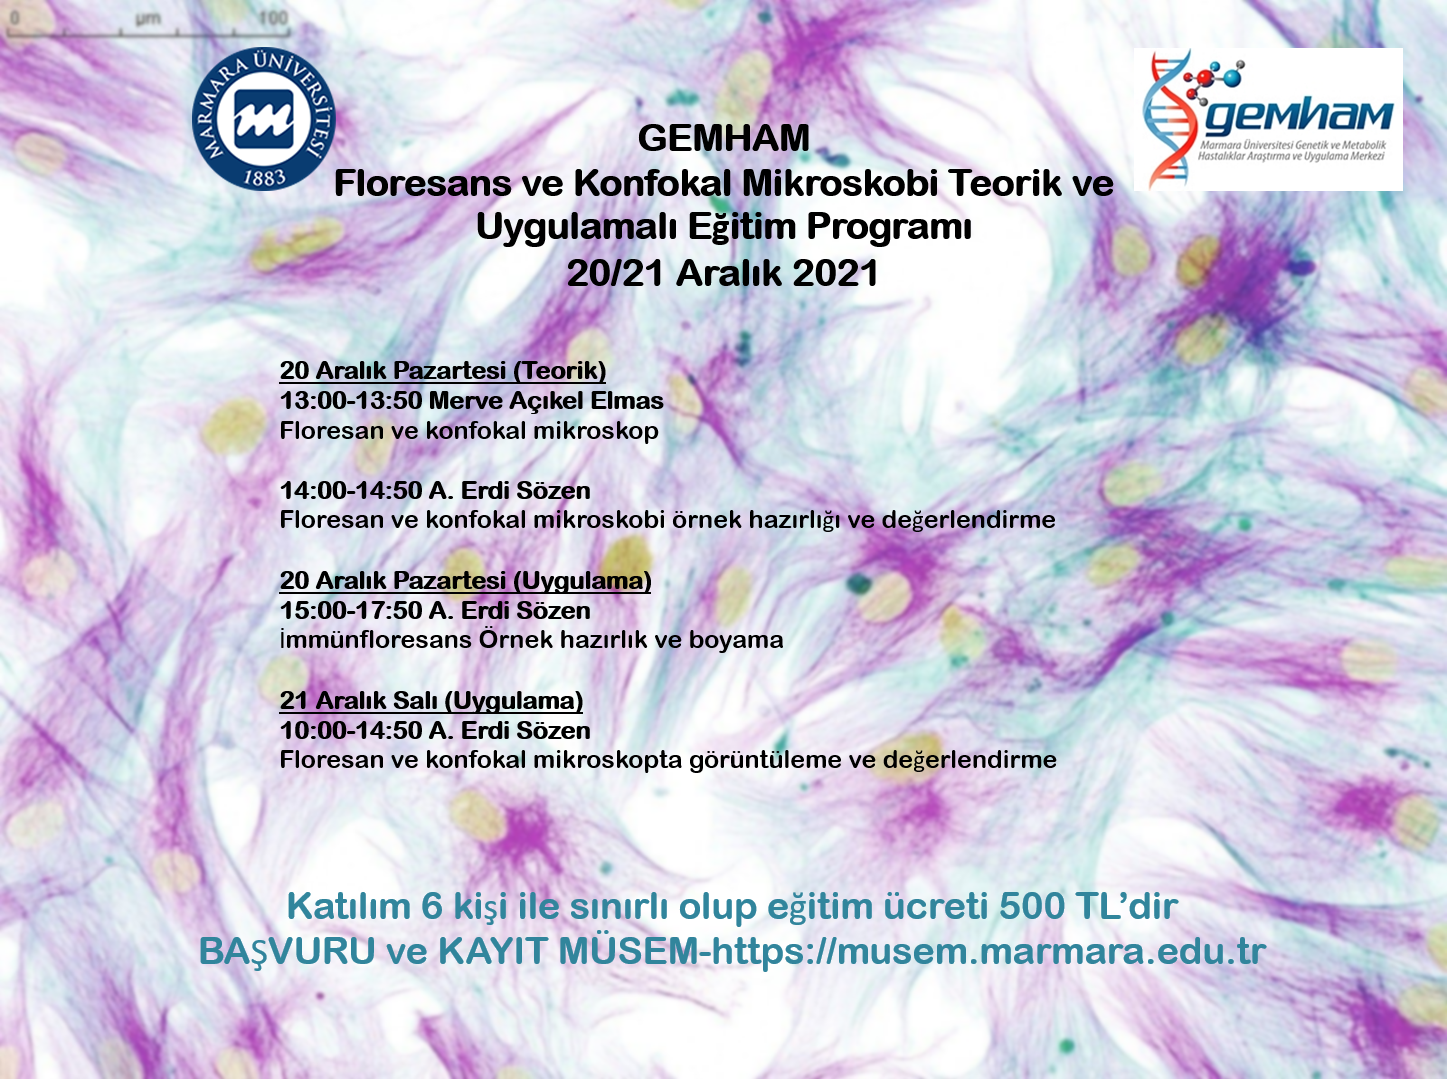 Floresan - Konfokal.png (3.63 MB)